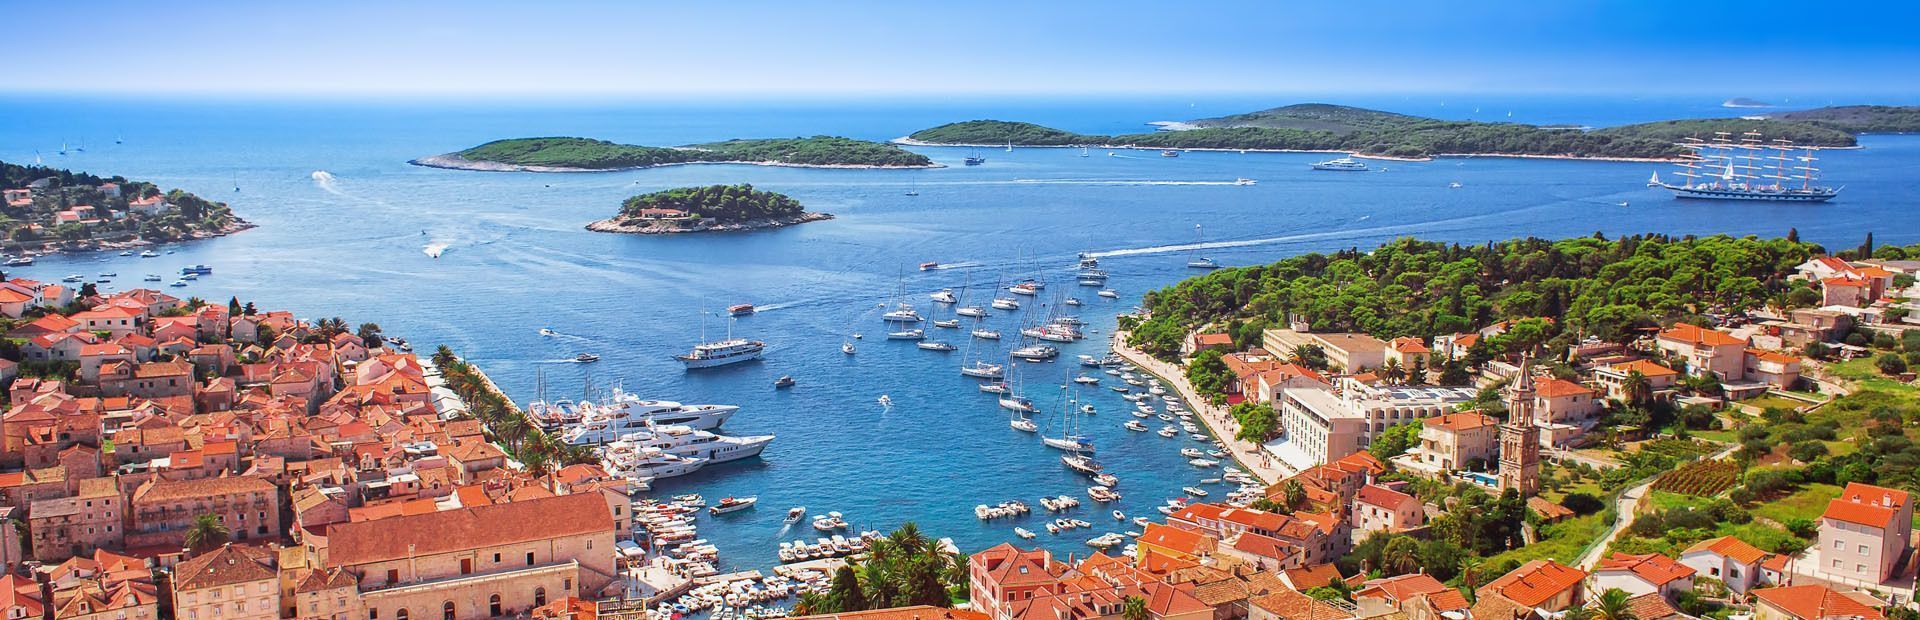 Croazia: i paesaggi di Dubrovnik e il mare di Hvar